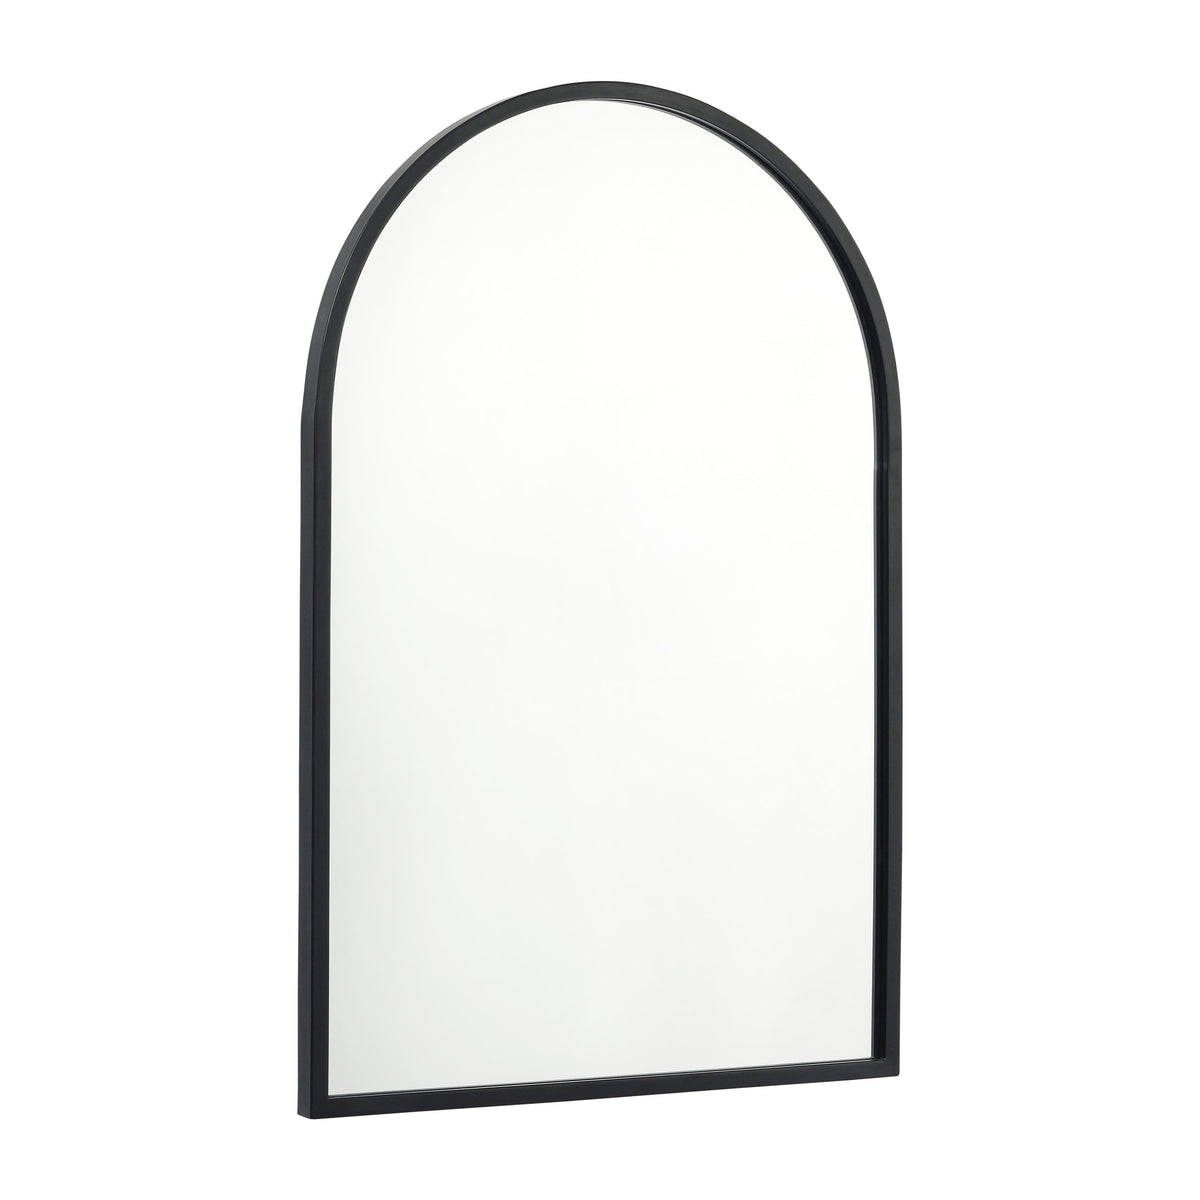 Black,20inchW x 30inchL |#| Wall Mount Arched Mirror with Slim Black Metal Frame- 20inch x 30inch